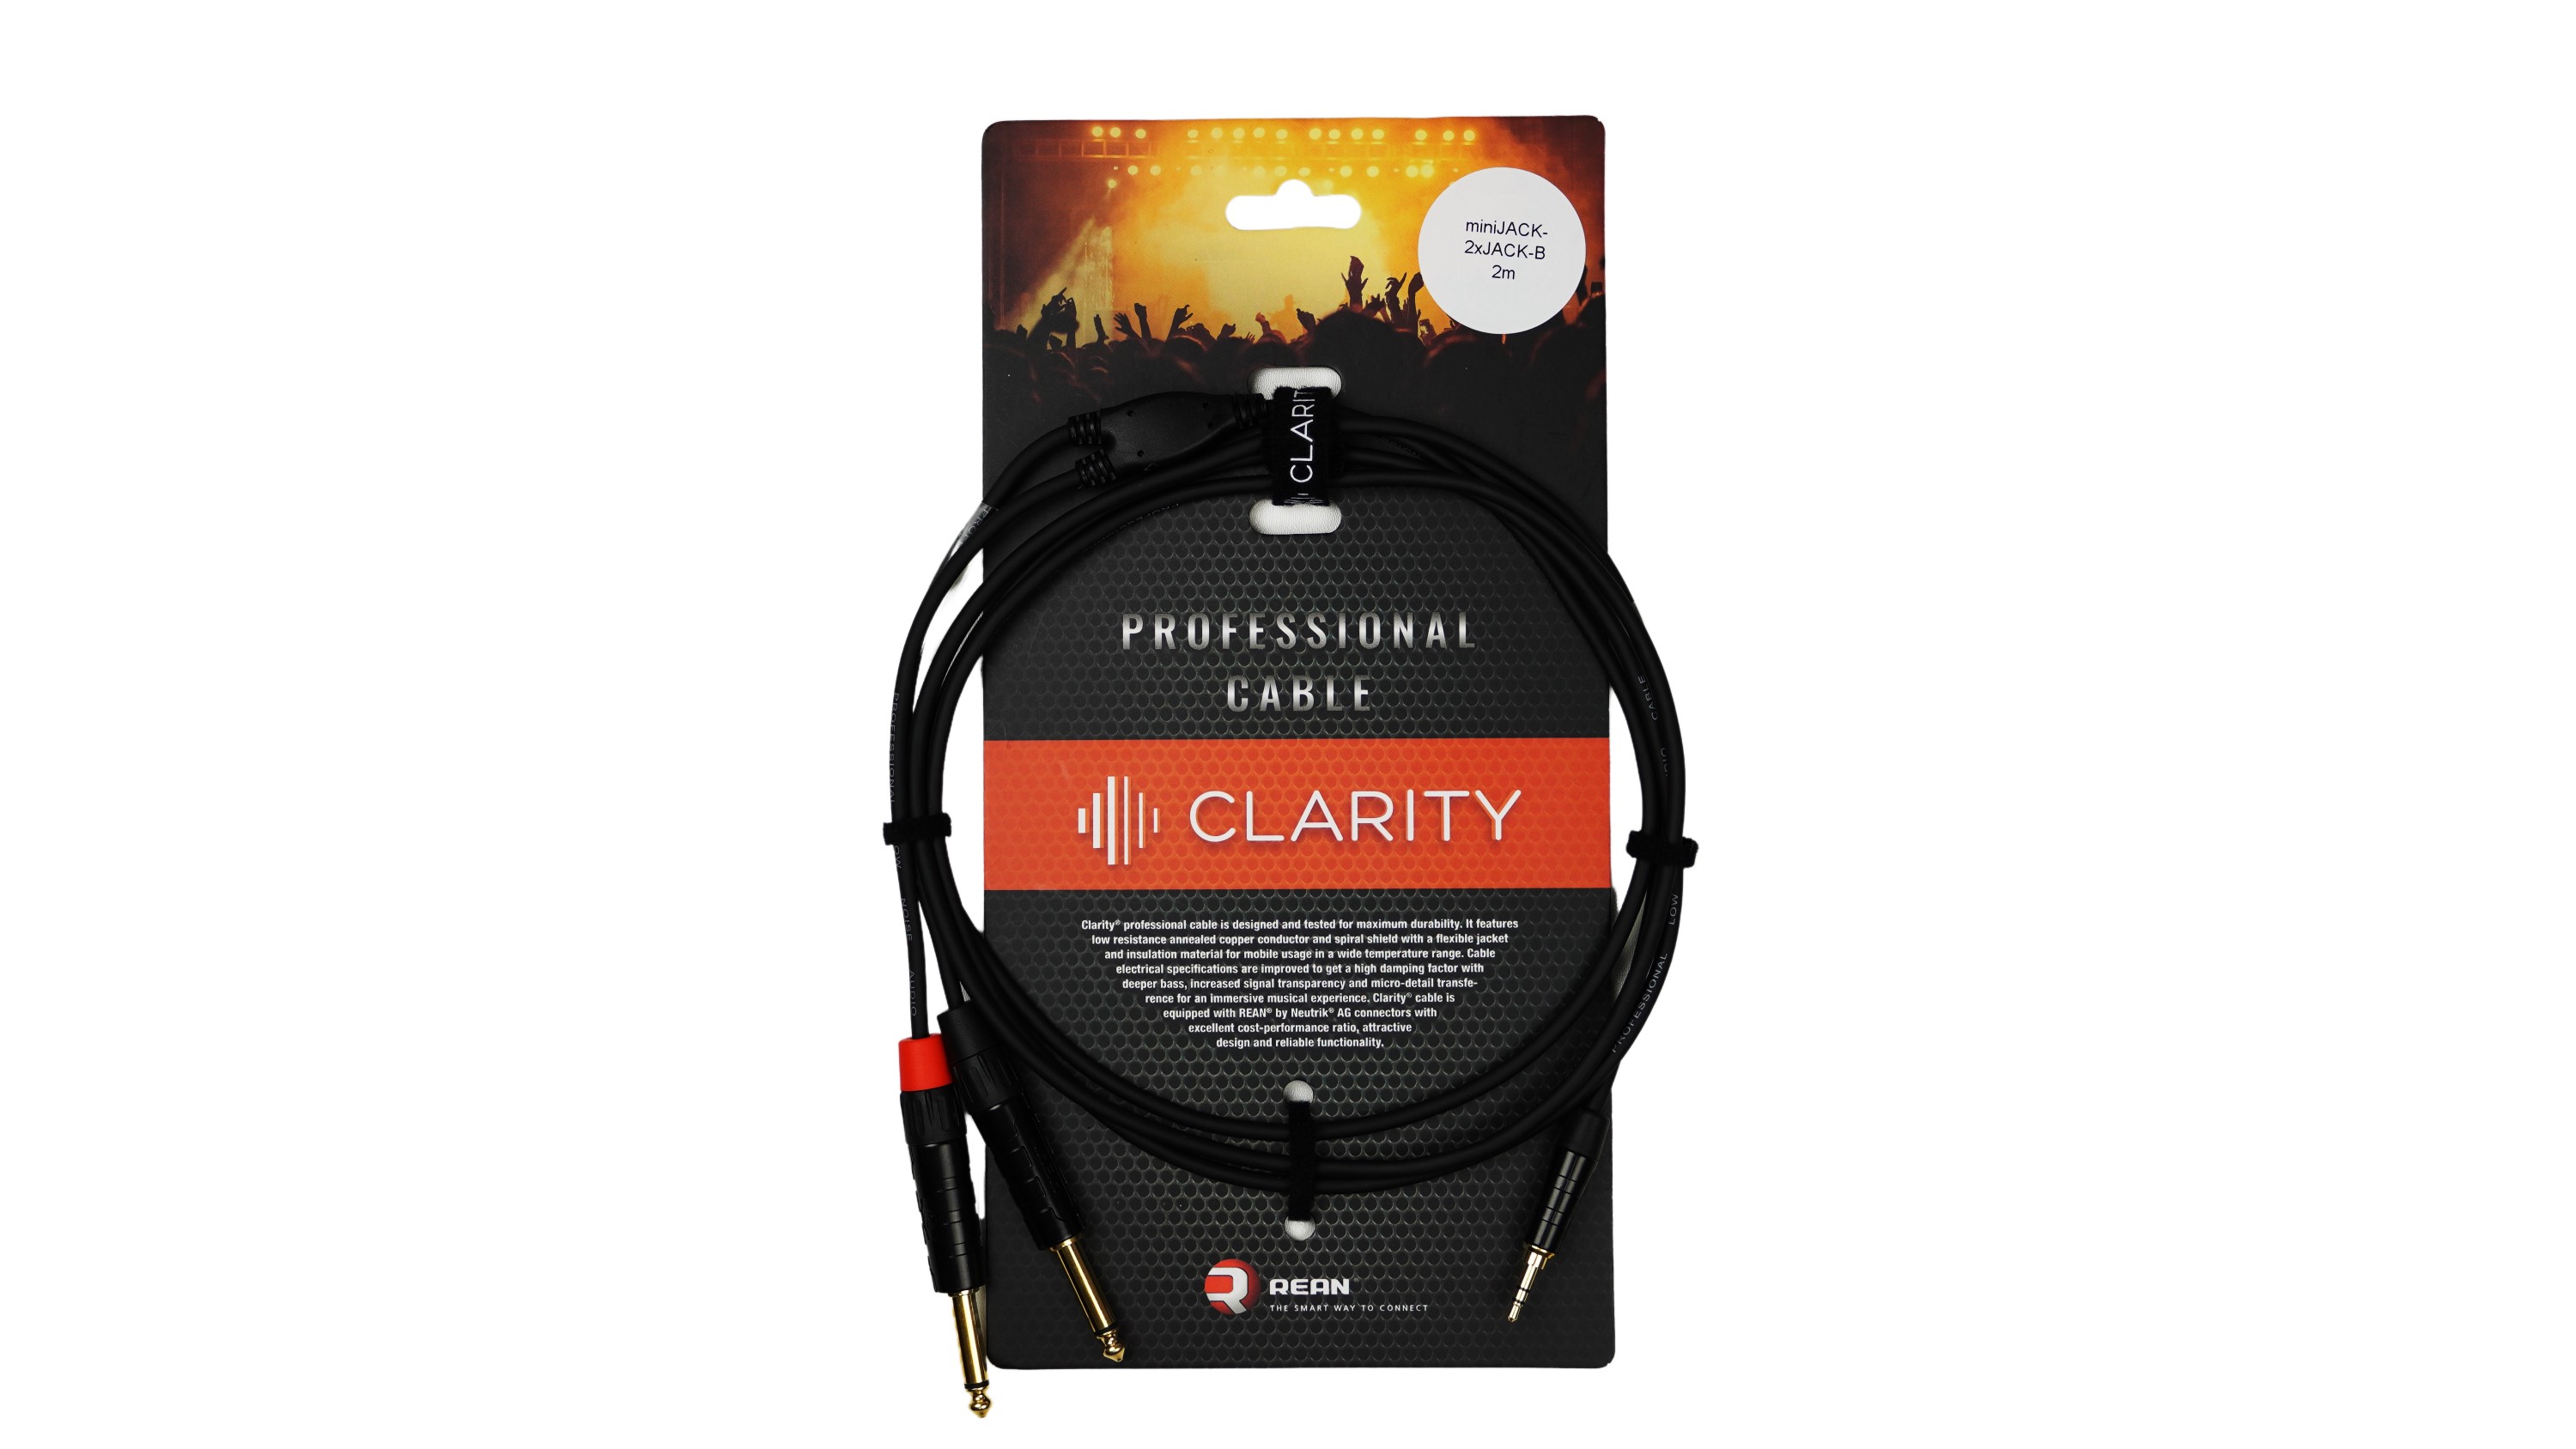 Коммутационный кабель Clarity miniJACK-2xJACK-B/2m